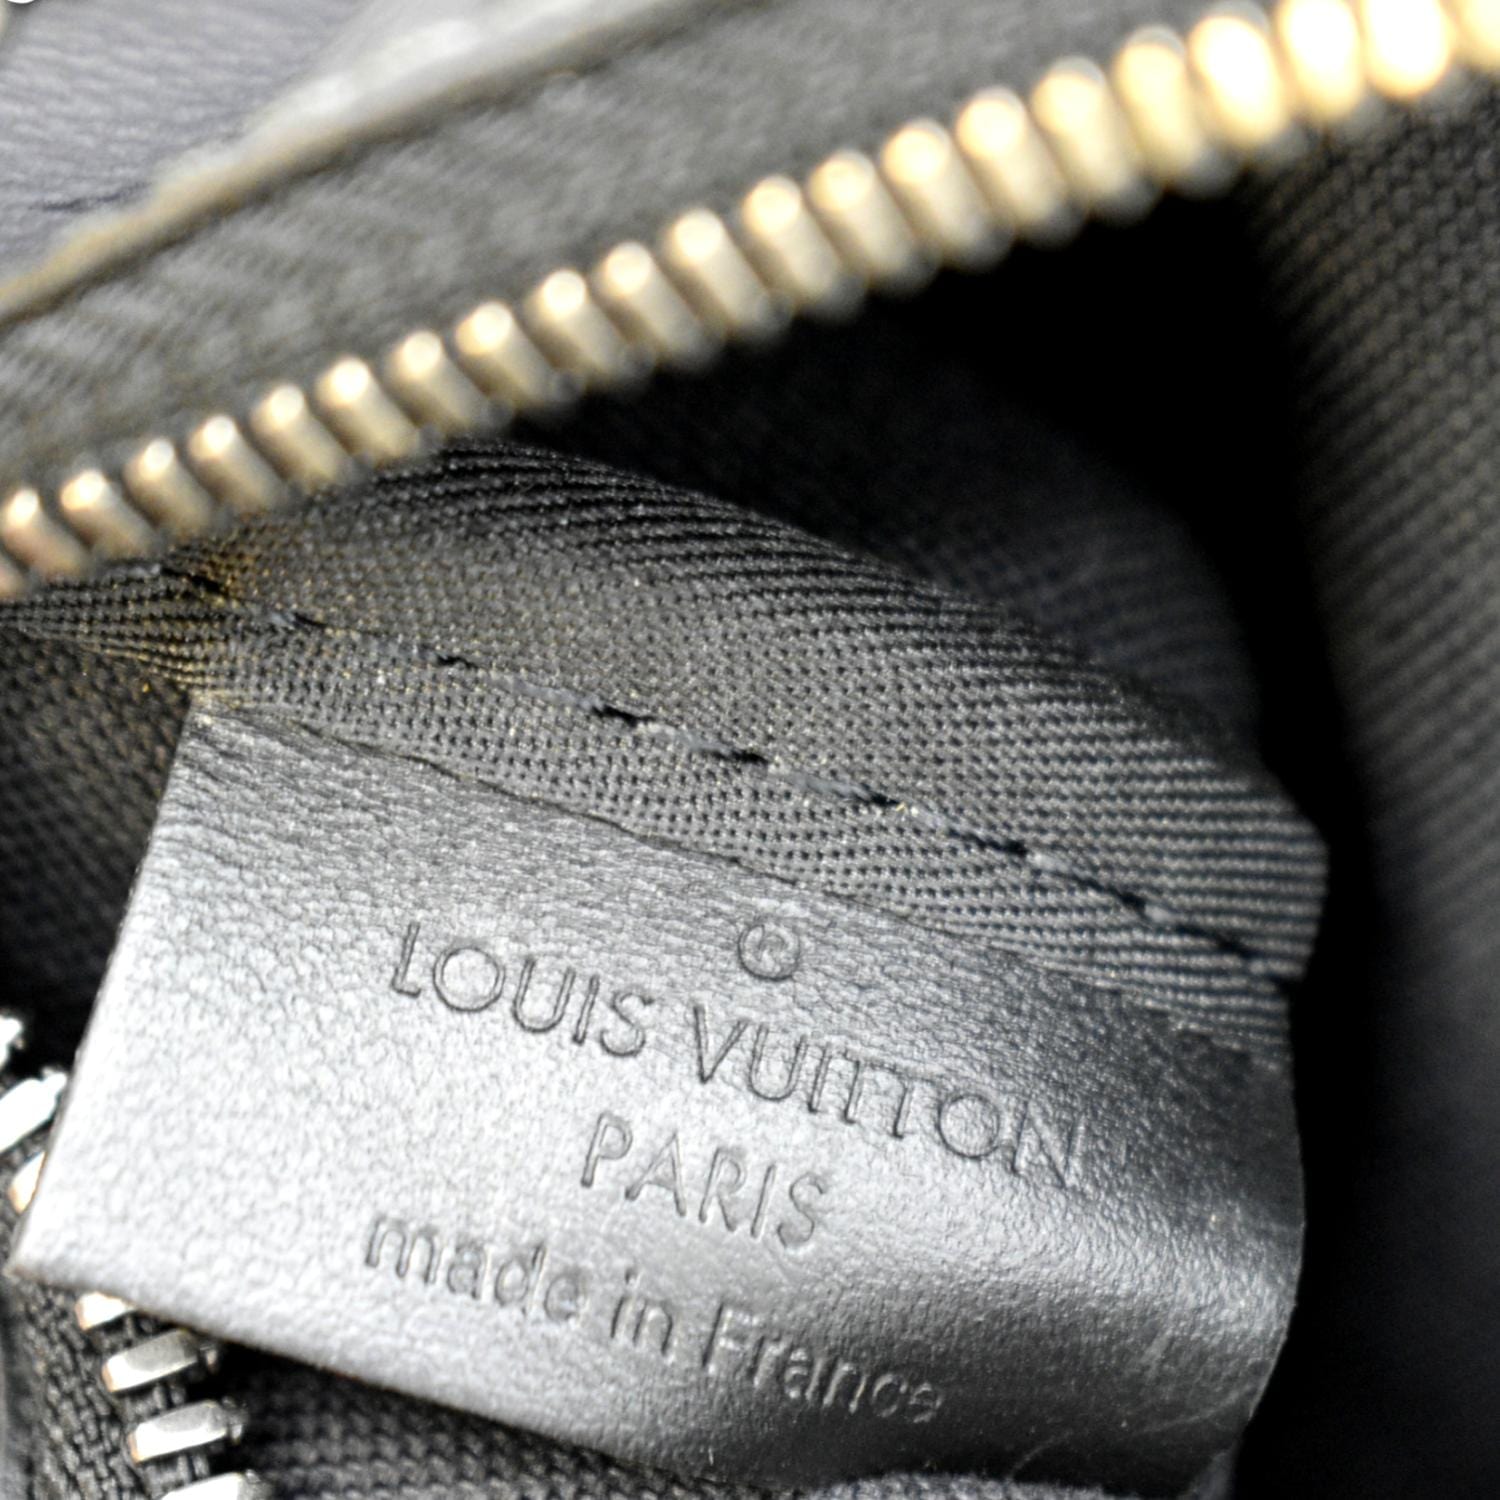 Louis Vuitton Shoulder Bag Trio Messenger Black Gray Silver Damier Graphit  3D N5